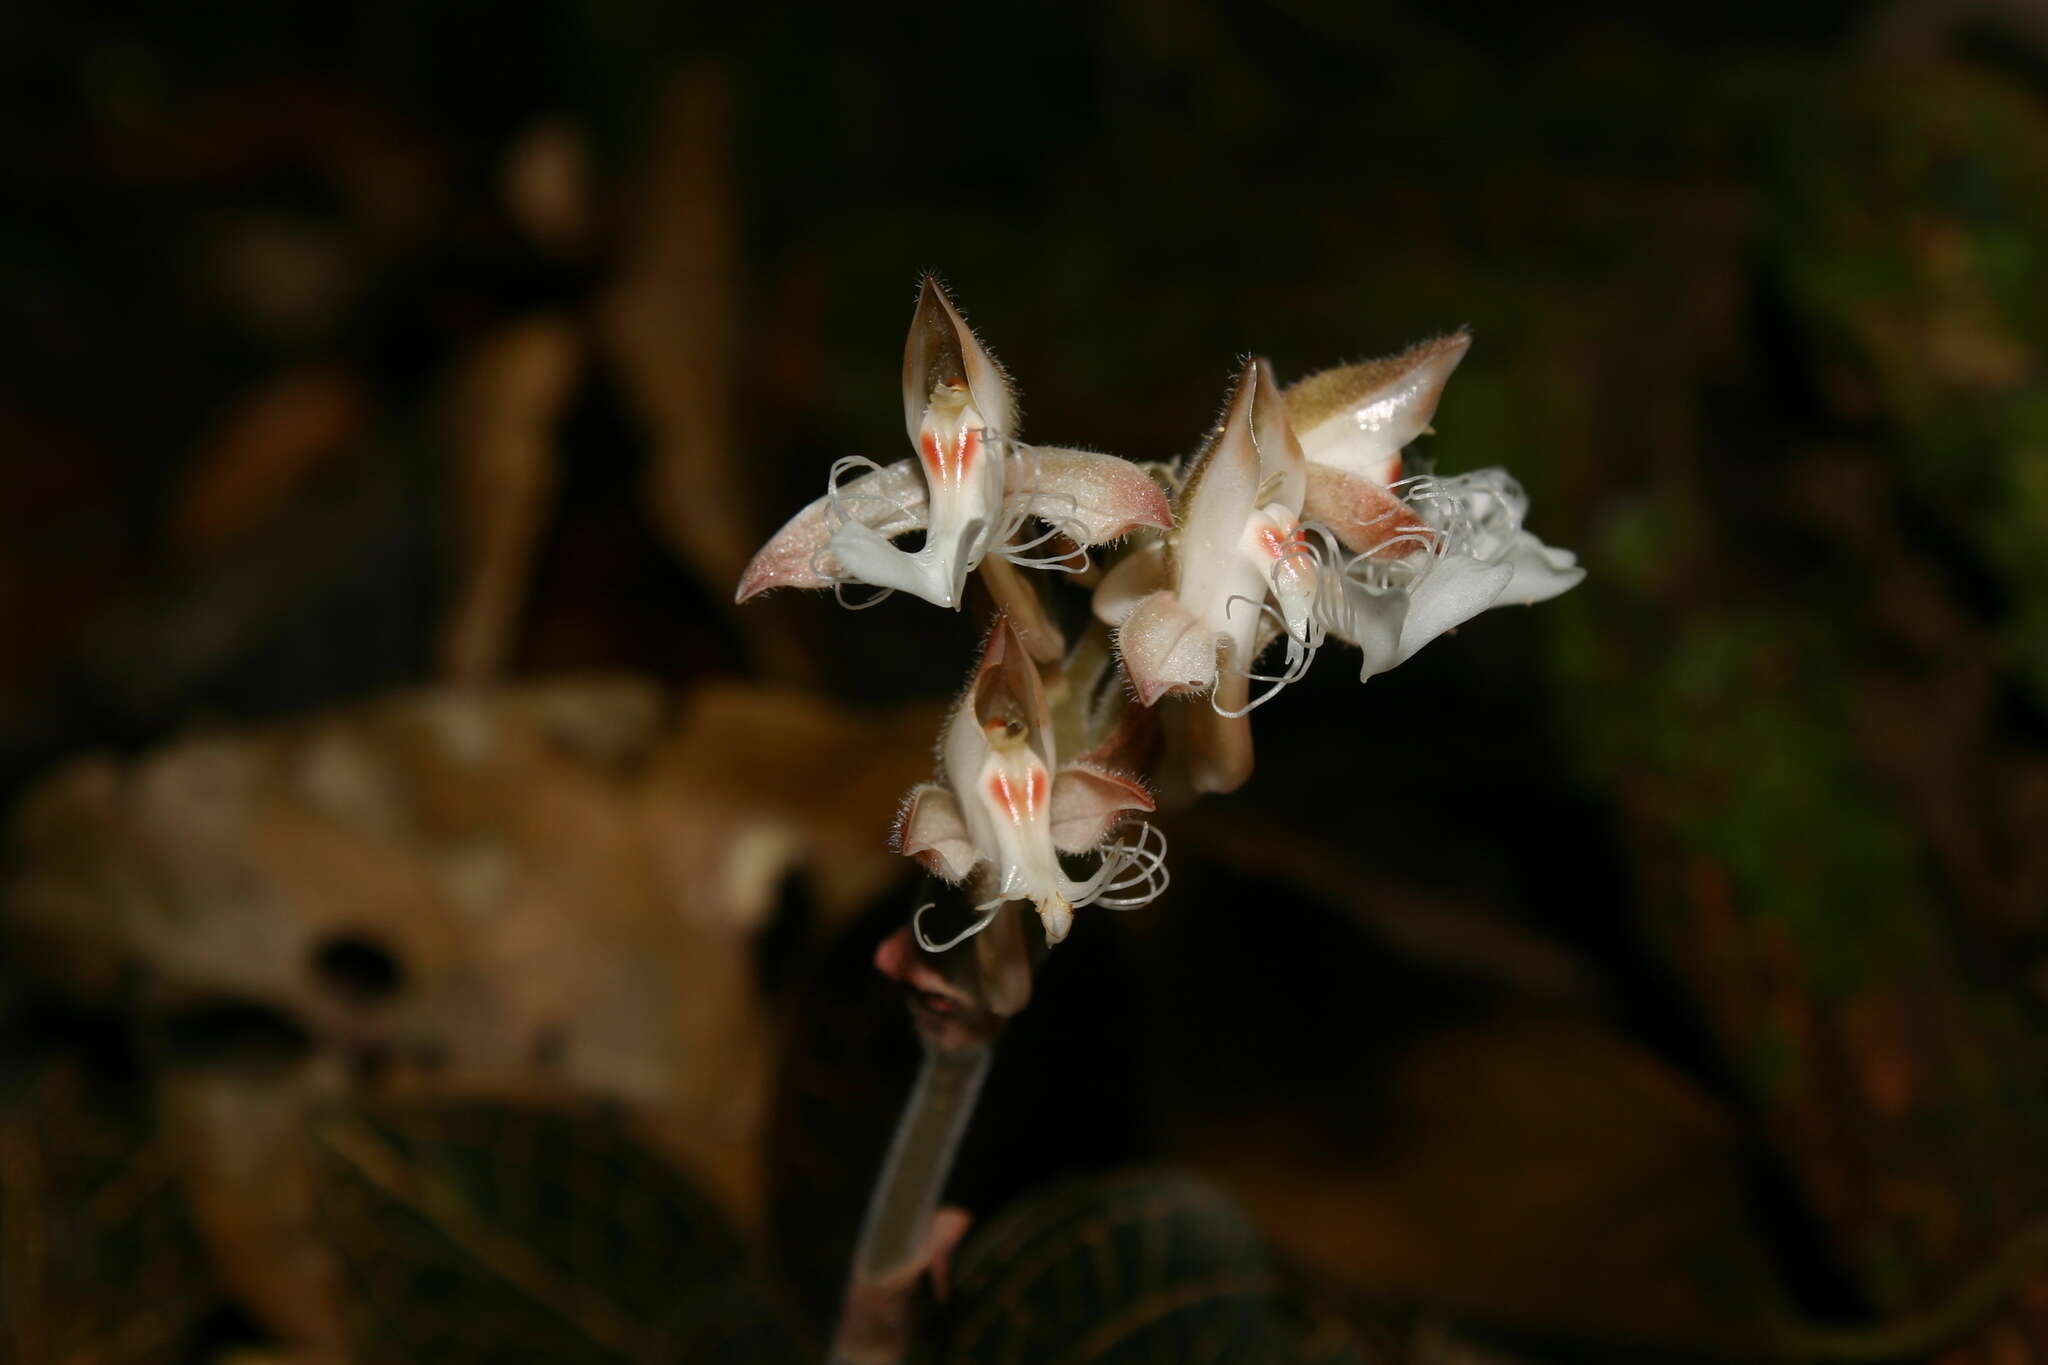 Image of Anoectochilus reinwardtii Blume